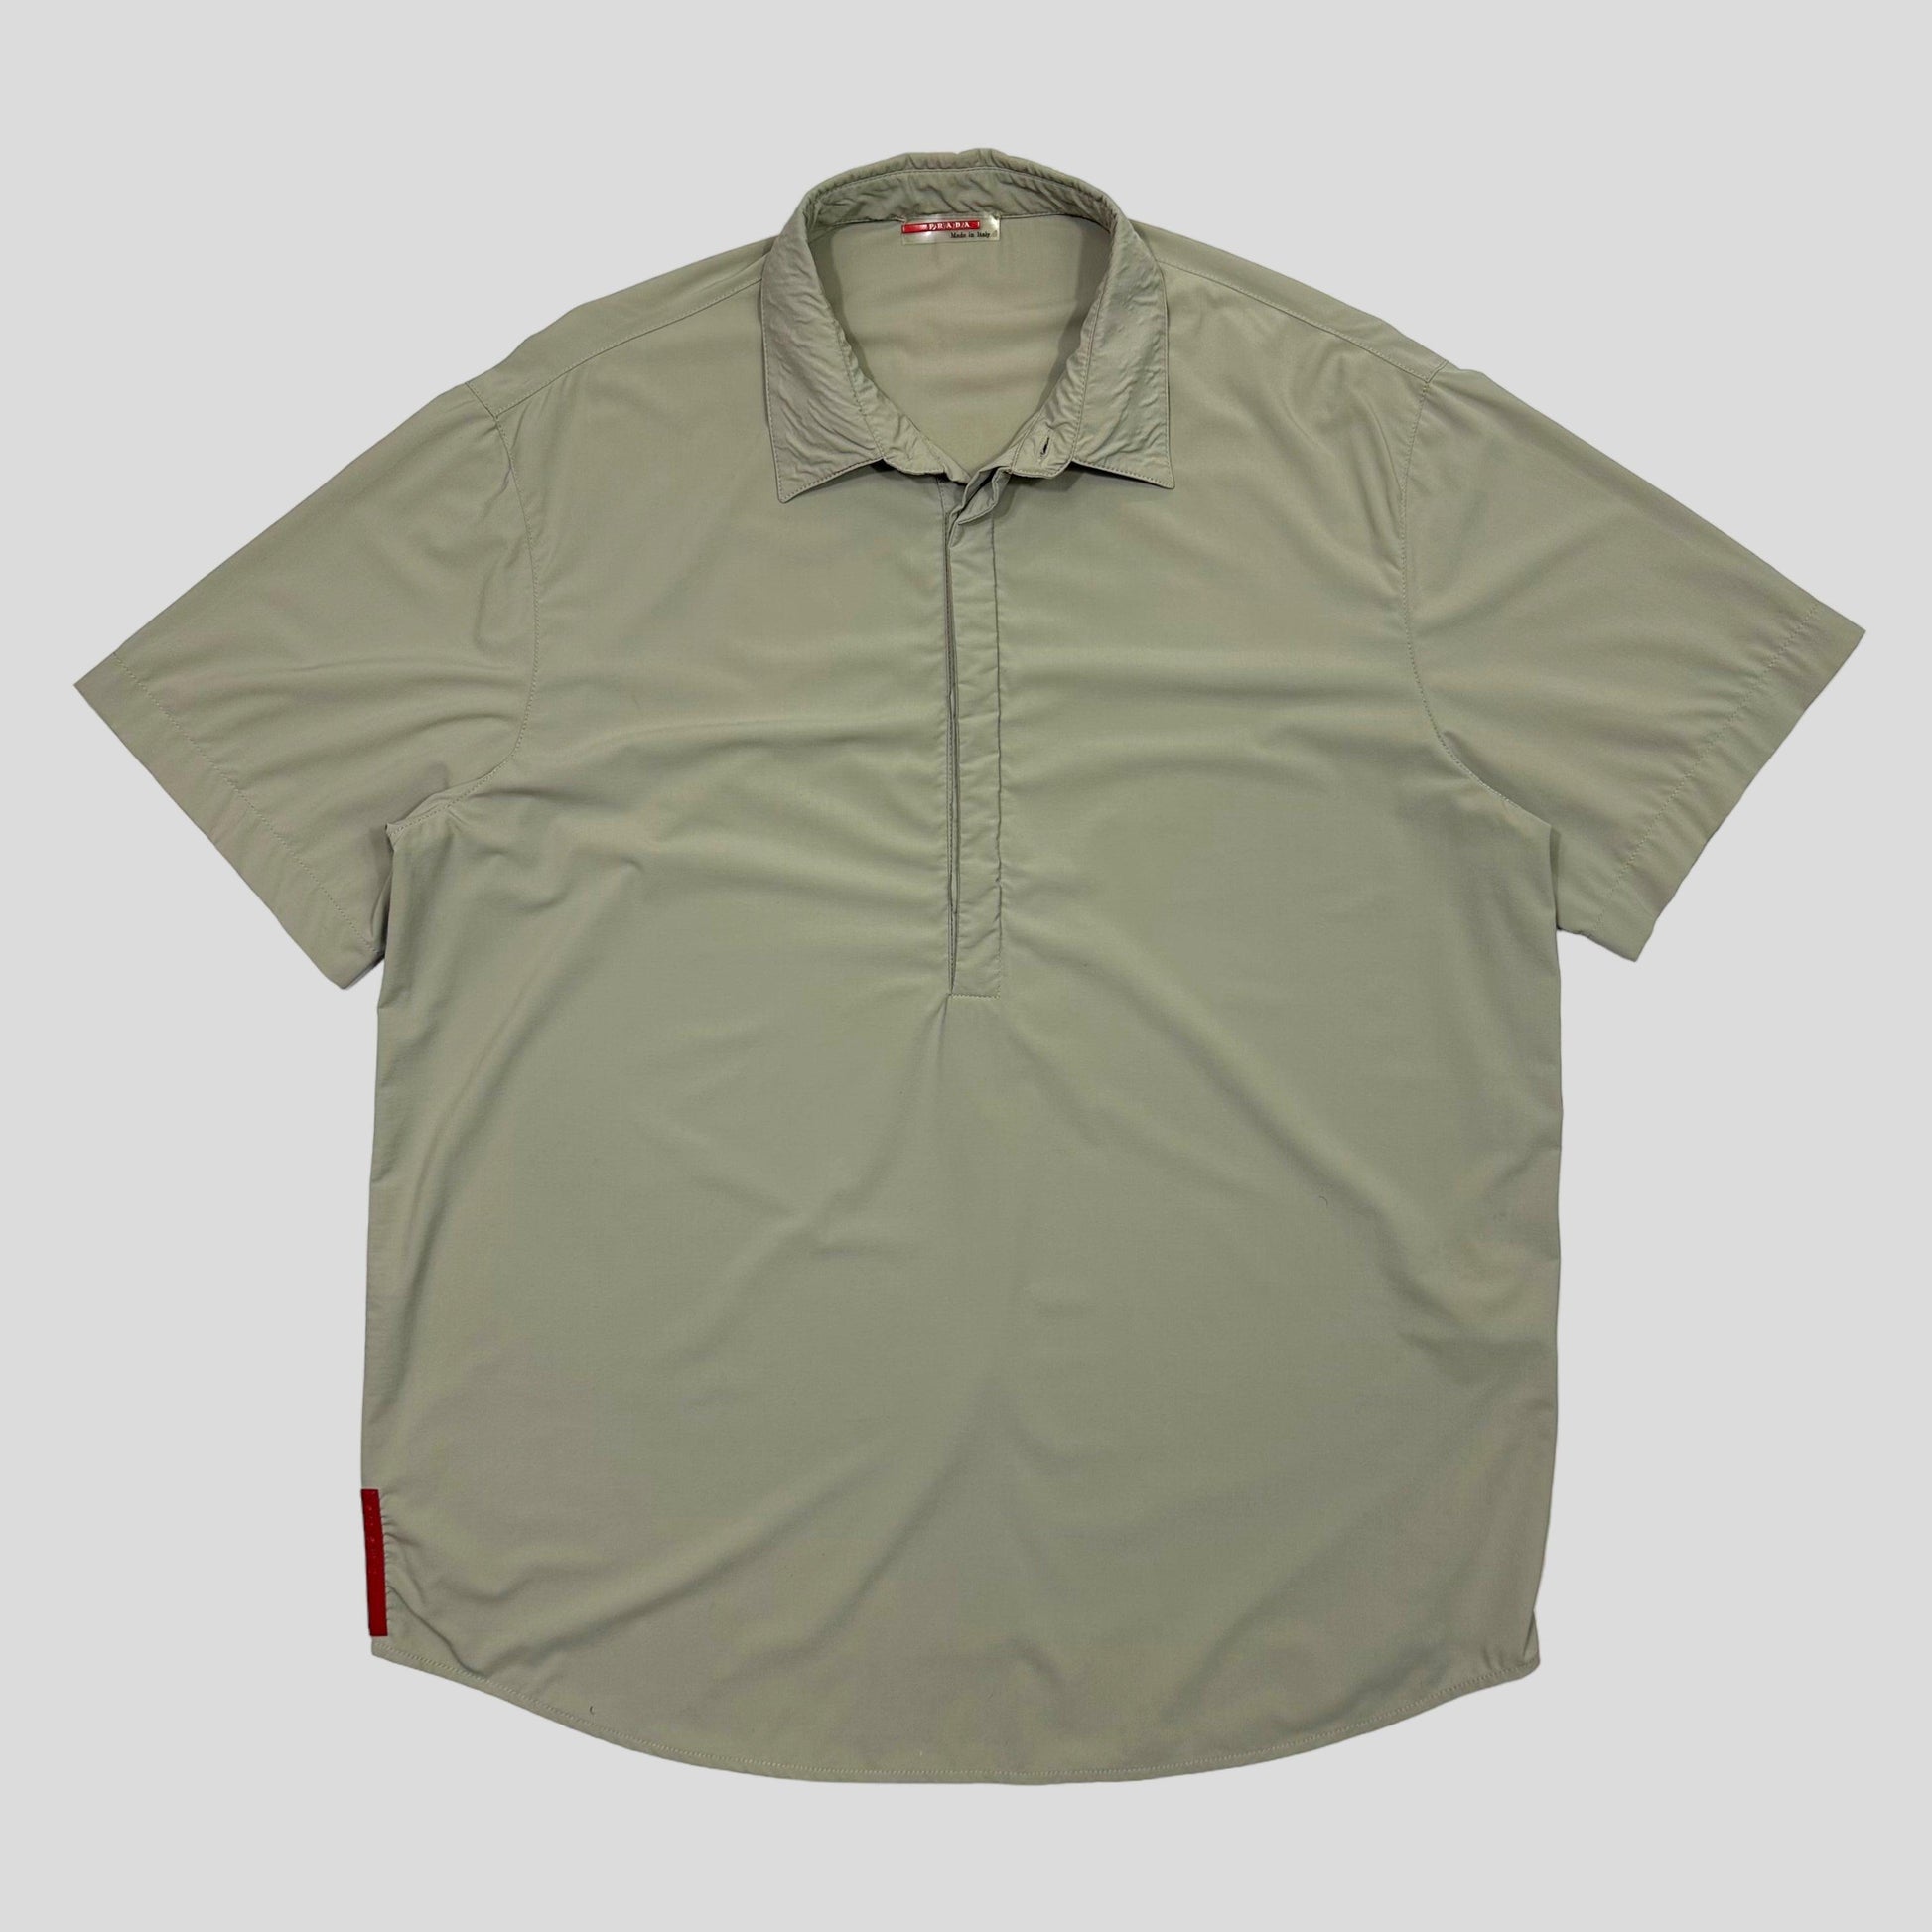 Prada Sport 00’s 1/2 Button Nylon Shirt - L/XL - Known Source